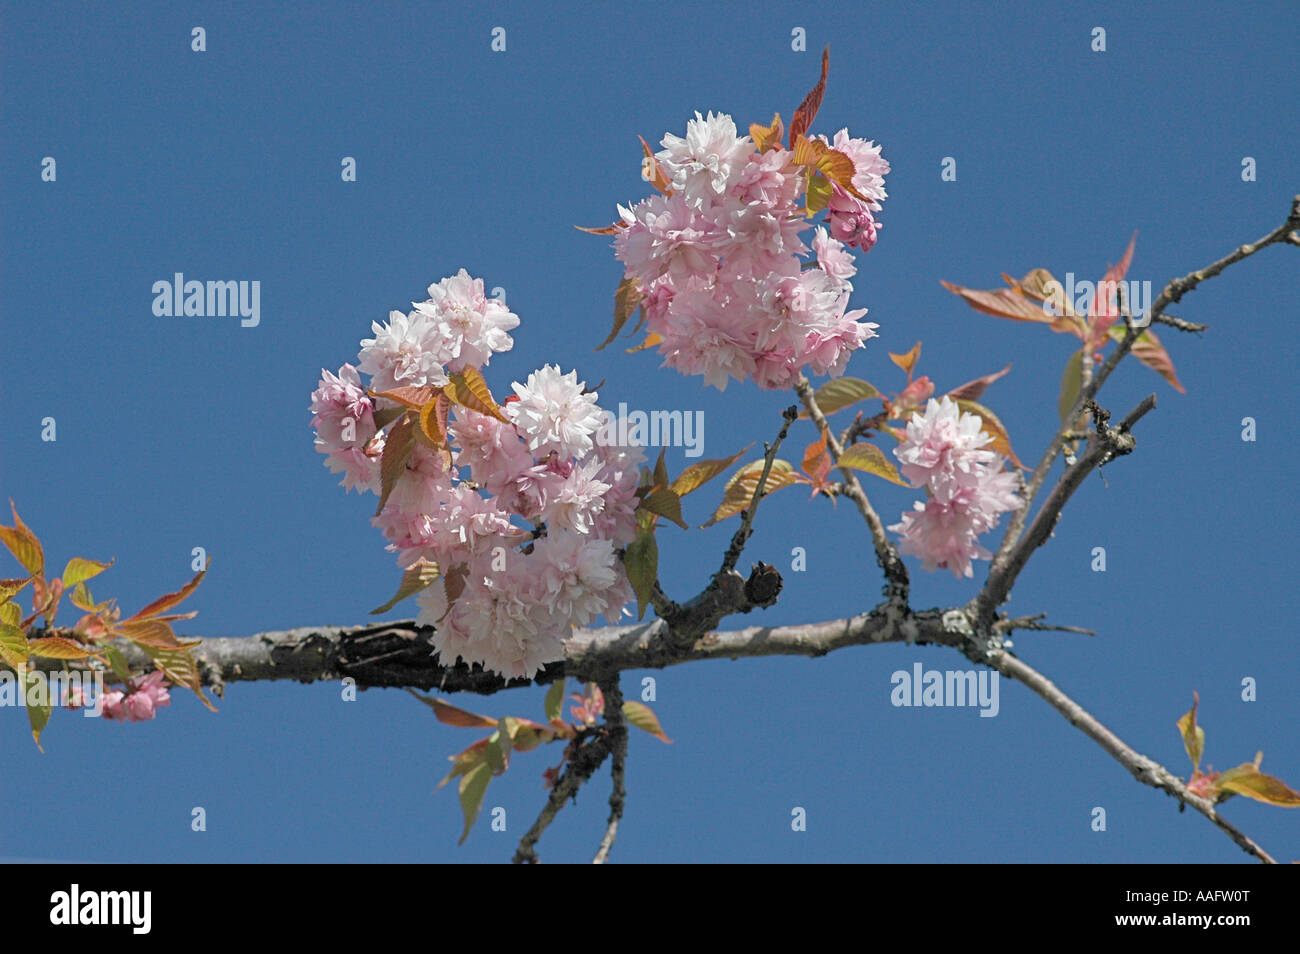 Ornamental Cherry blossom against blue sky. Stock Photo